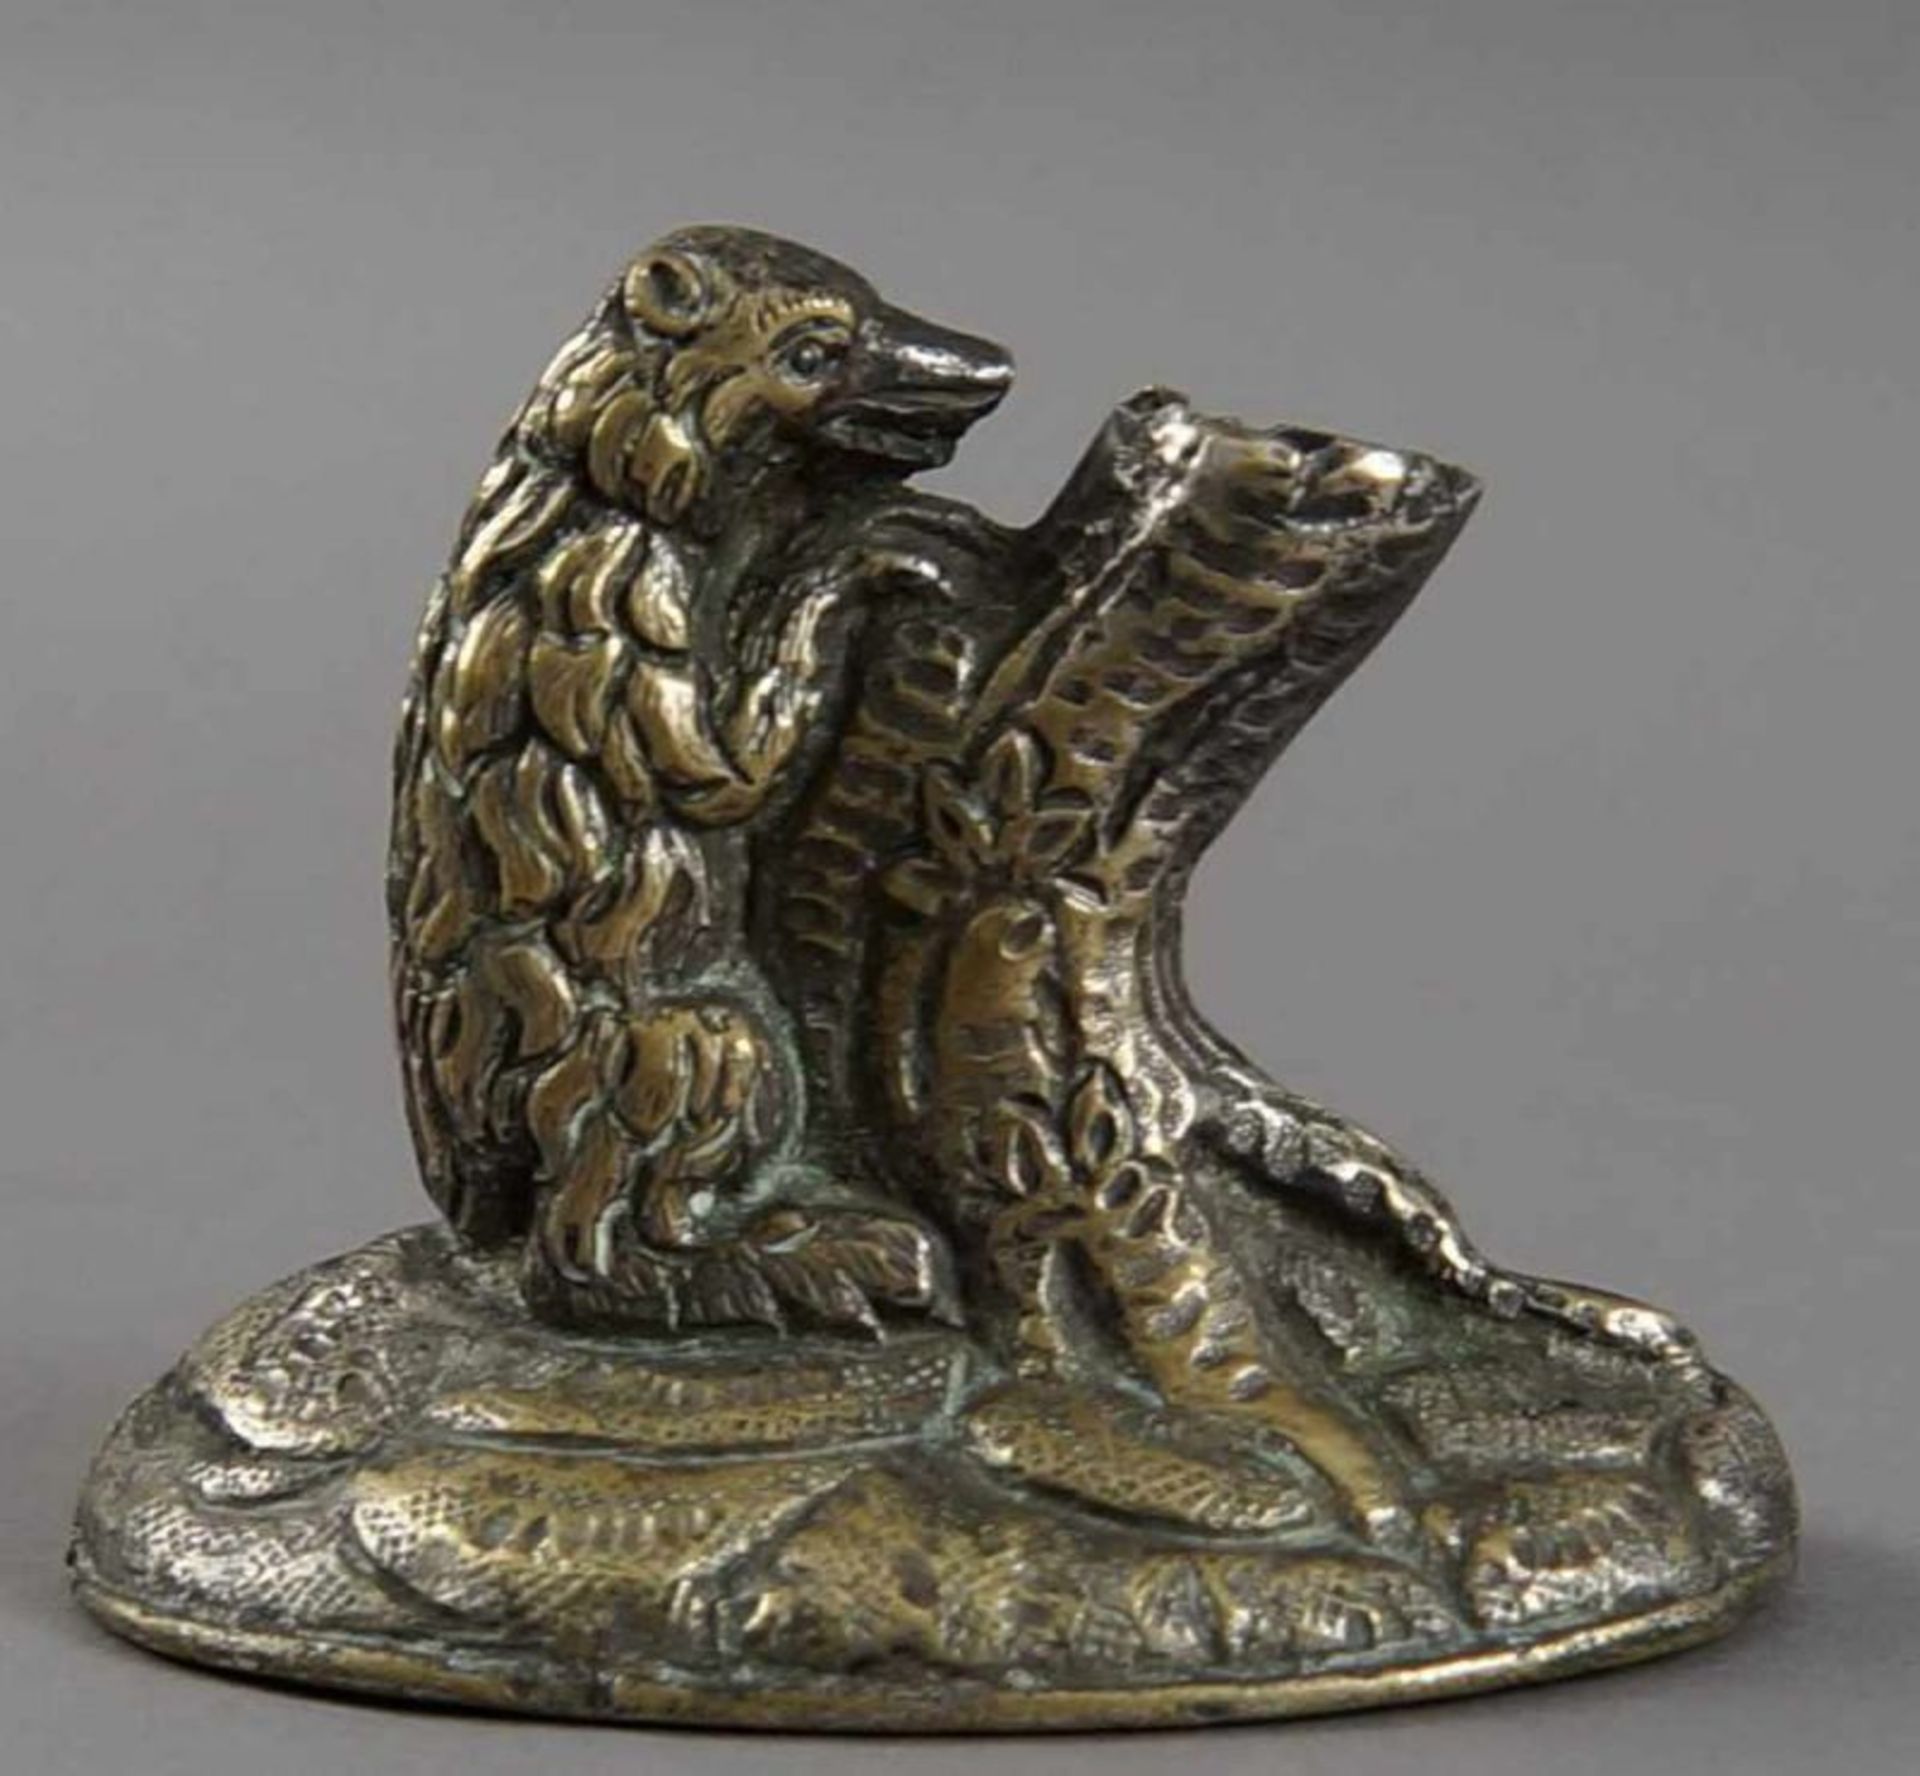 Federhalter, Bär an Baumstamm, aus Bronze, 17. JH, H 6 cm 20.17 % buyer's premium on the hammer - Bild 4 aus 6